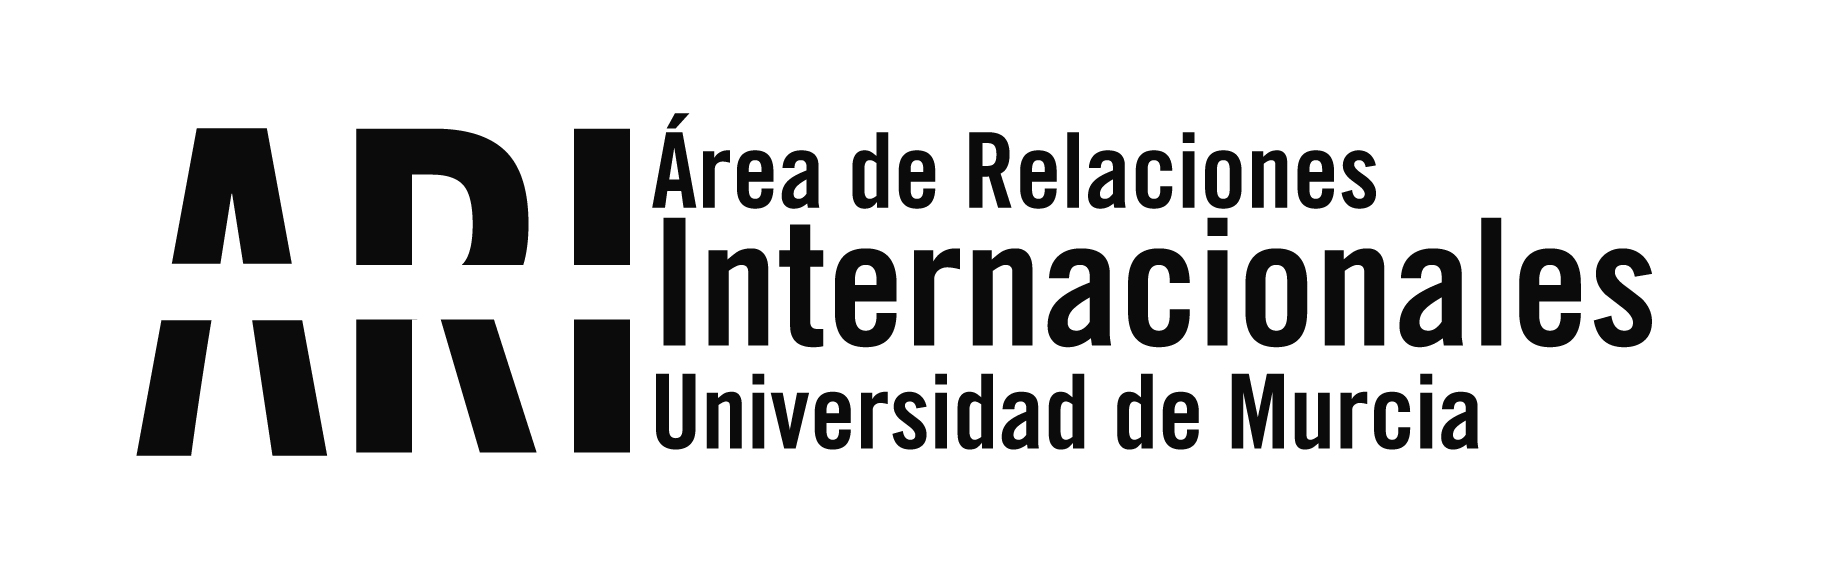 Reunión de organización final del proyecto KA2 EXPERES en Murcia - Área de Relaciones Internacionales